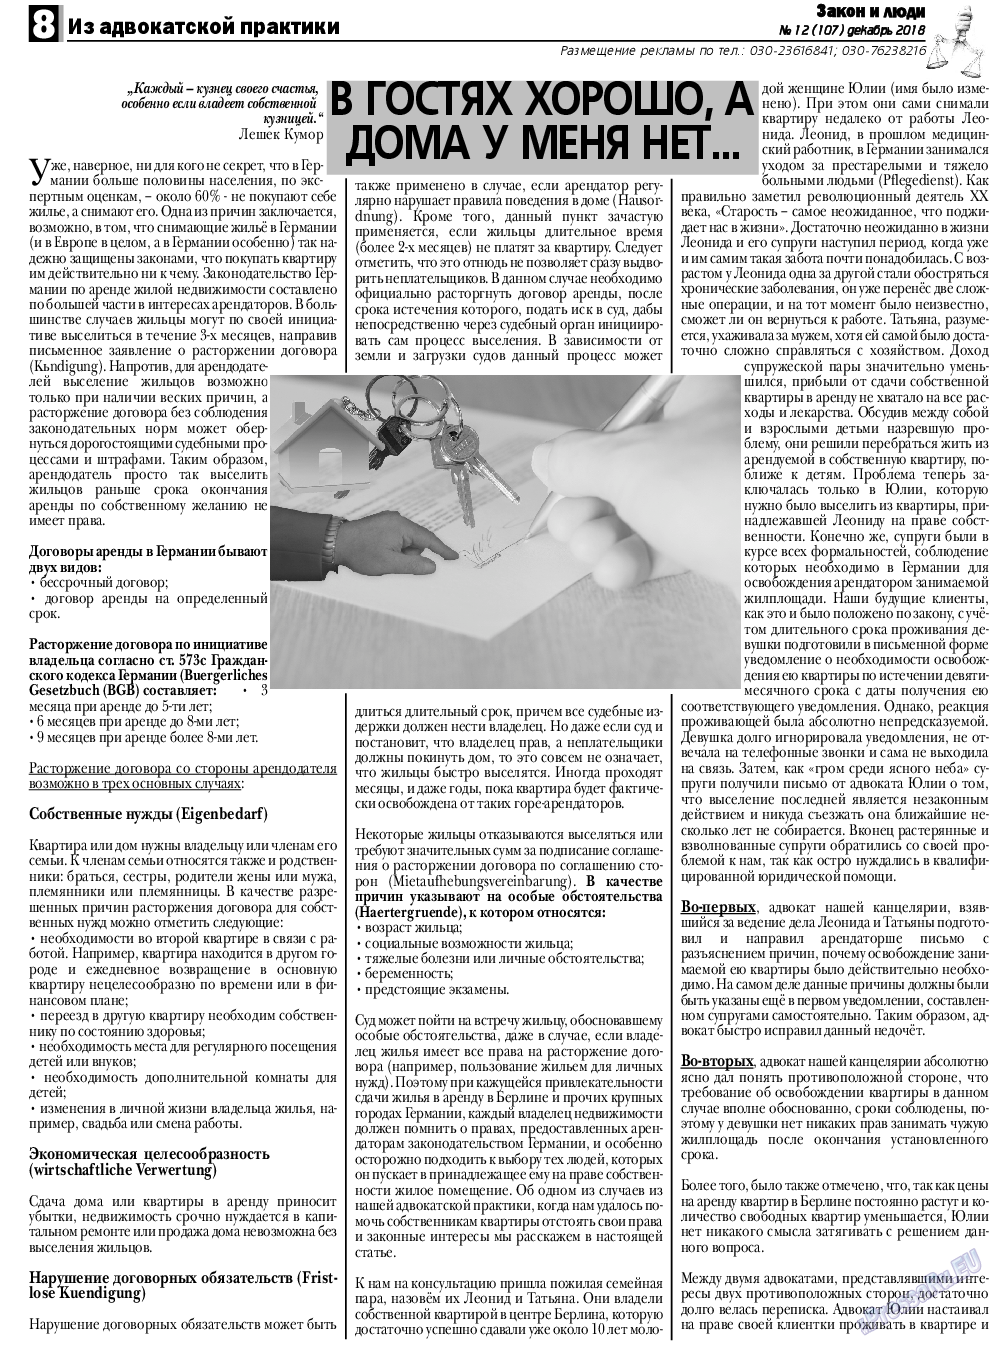 Закон и люди, газета. 2018 №12 стр.8